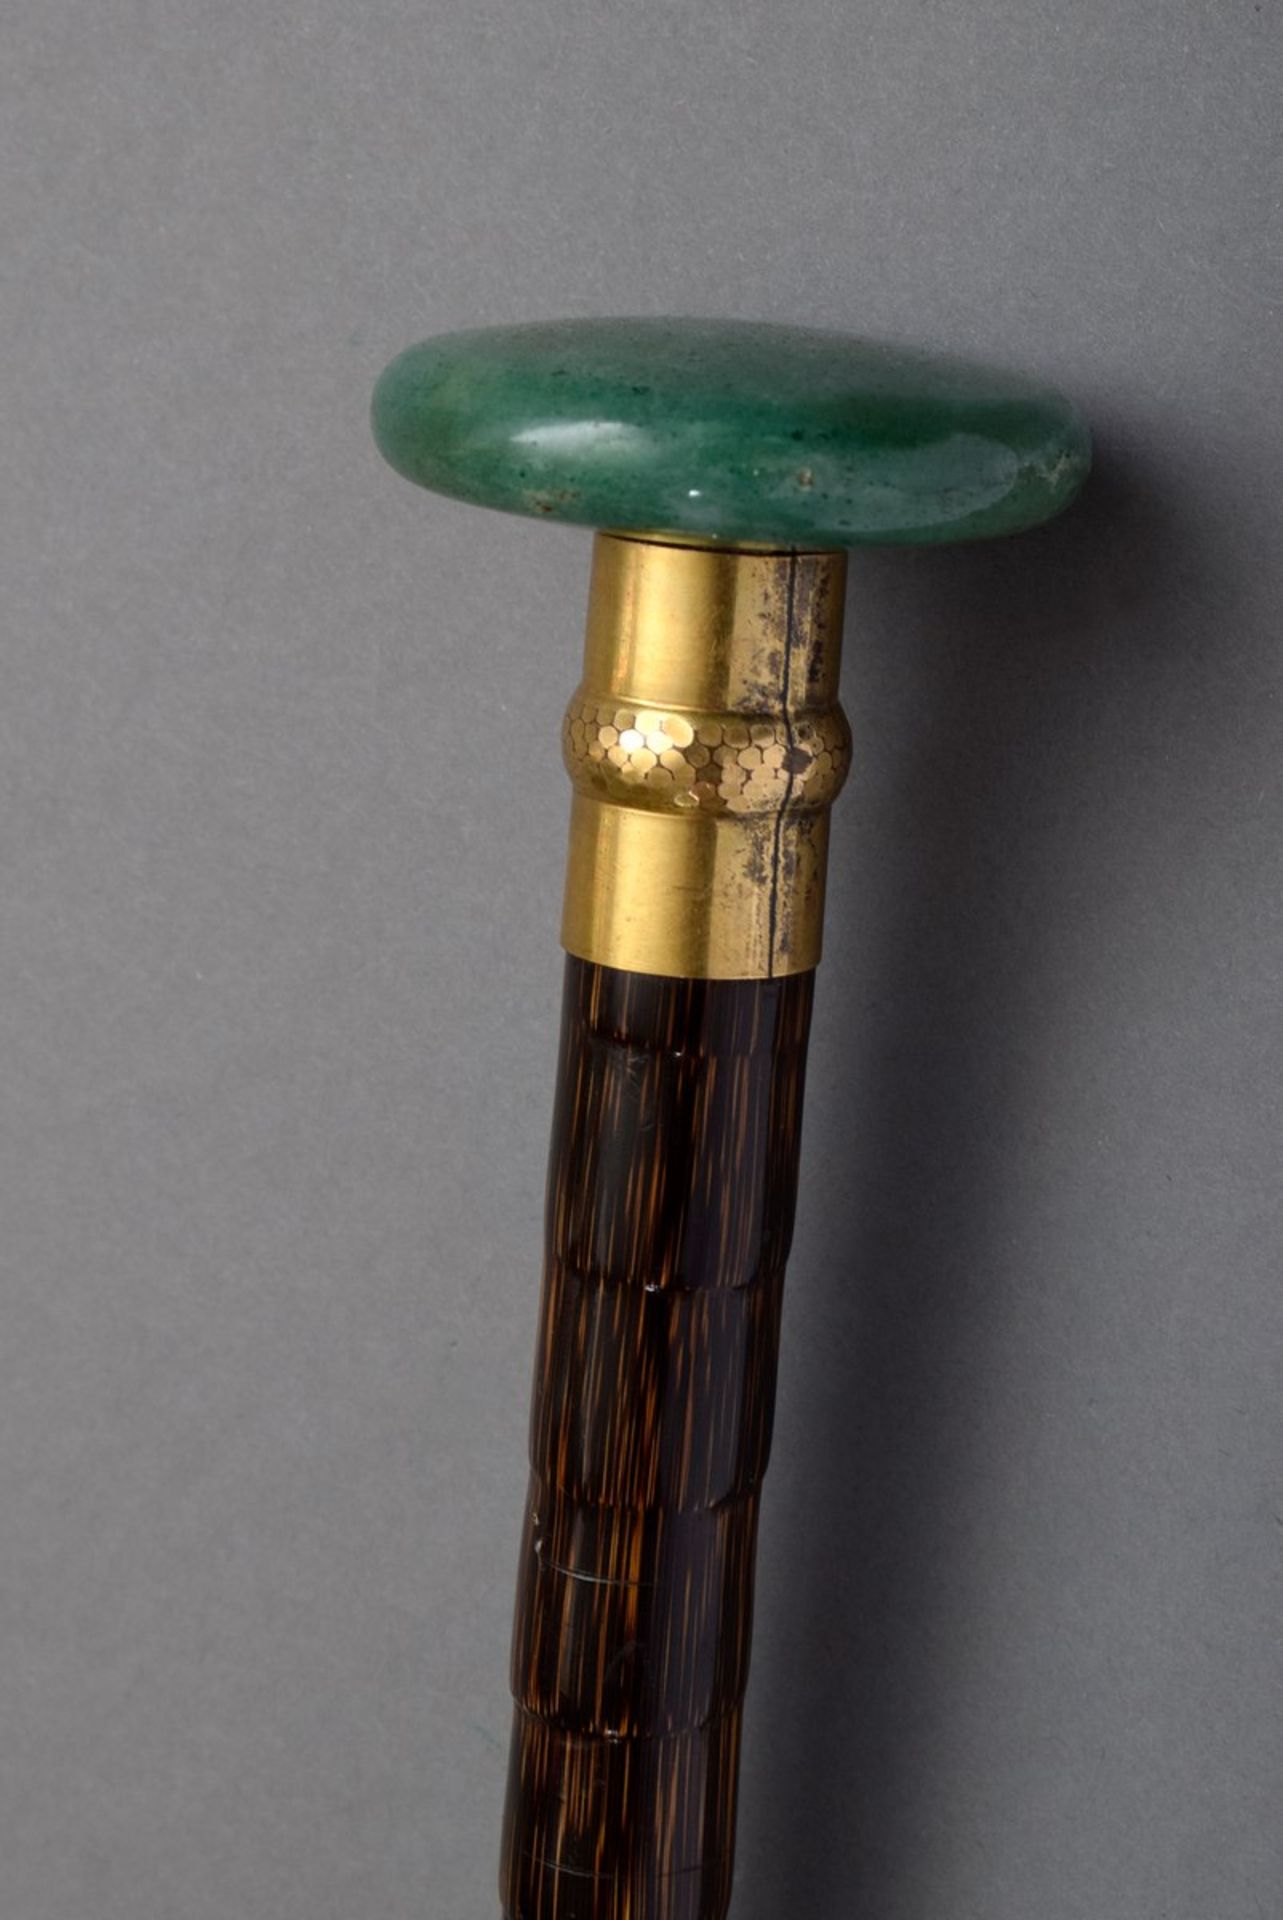 Spazierstock mit scheibenförmigem Griff aus grünem Stein sowie vergoldeter Montierung und Palisander - Bild 4 aus 4